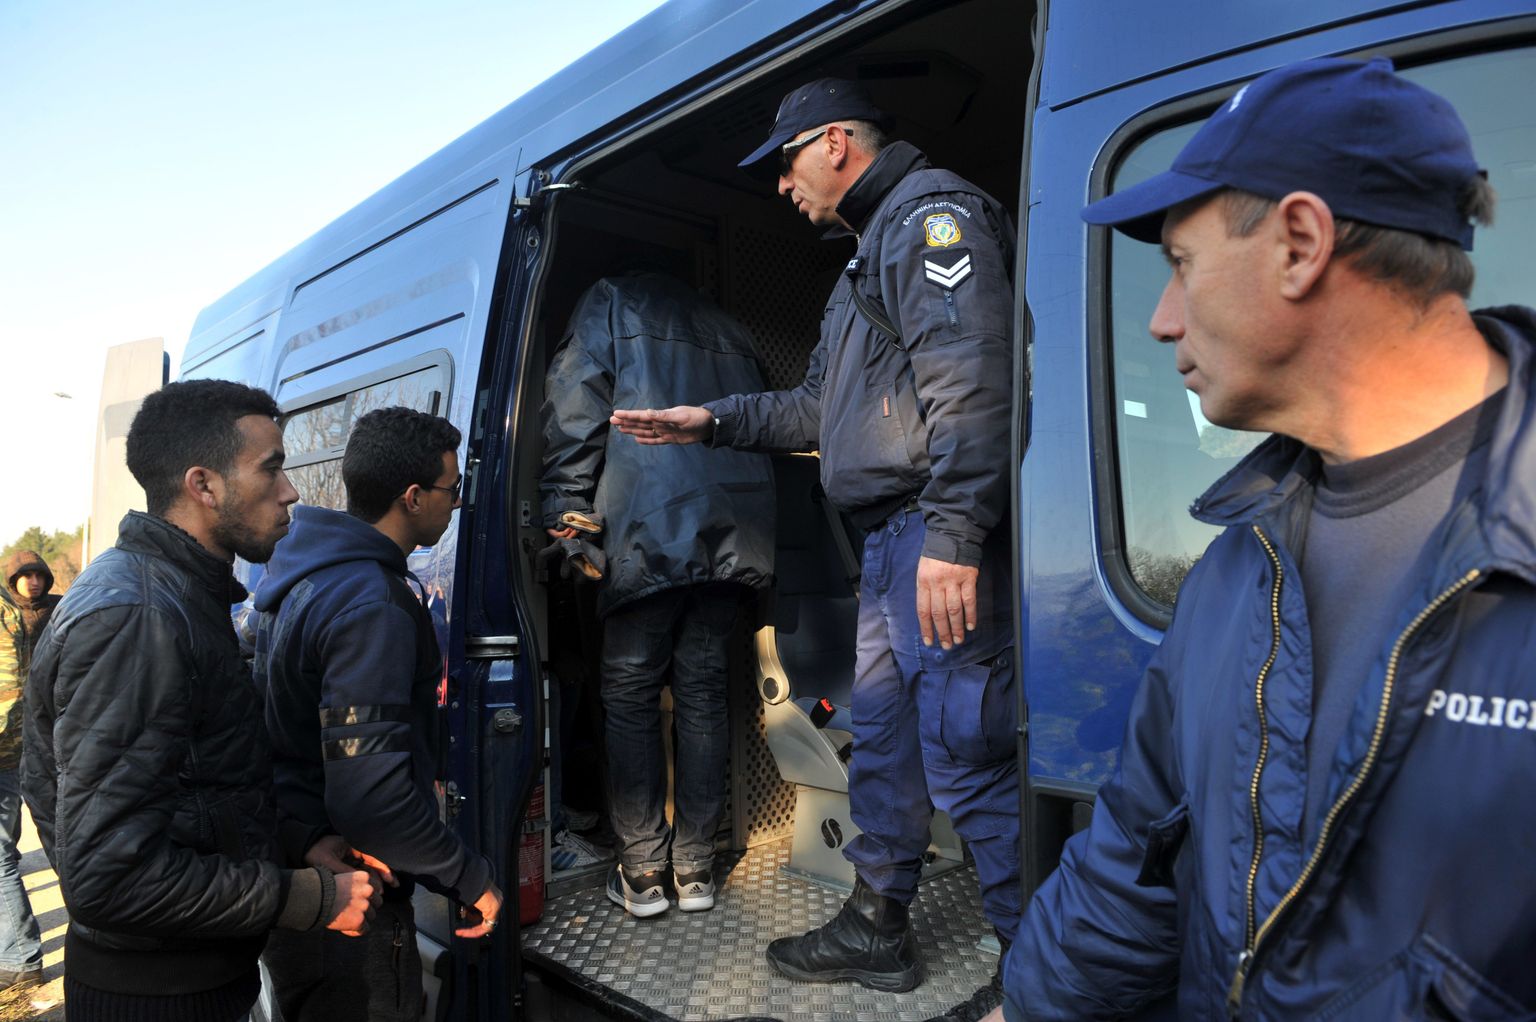 Kreeka ja Makedoonia piirilt bussidega Ateenasse tagasisaadetevad sisserändajad.